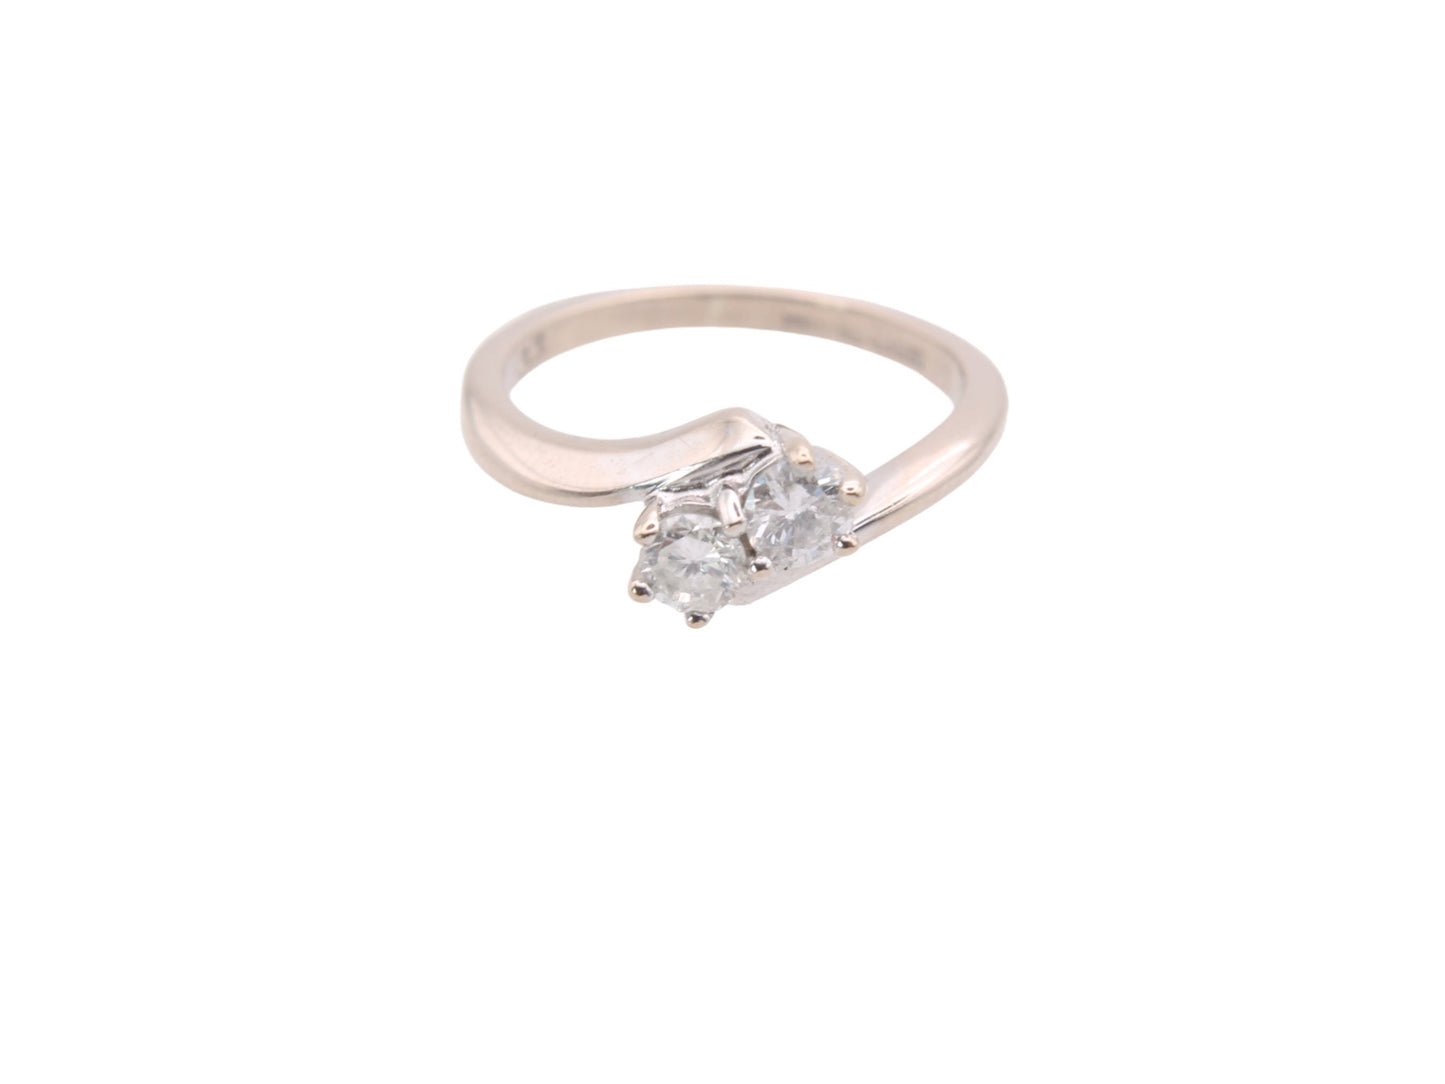 Vintage 18ct White Gold Toi et Moi Diamond Ring, .33ct